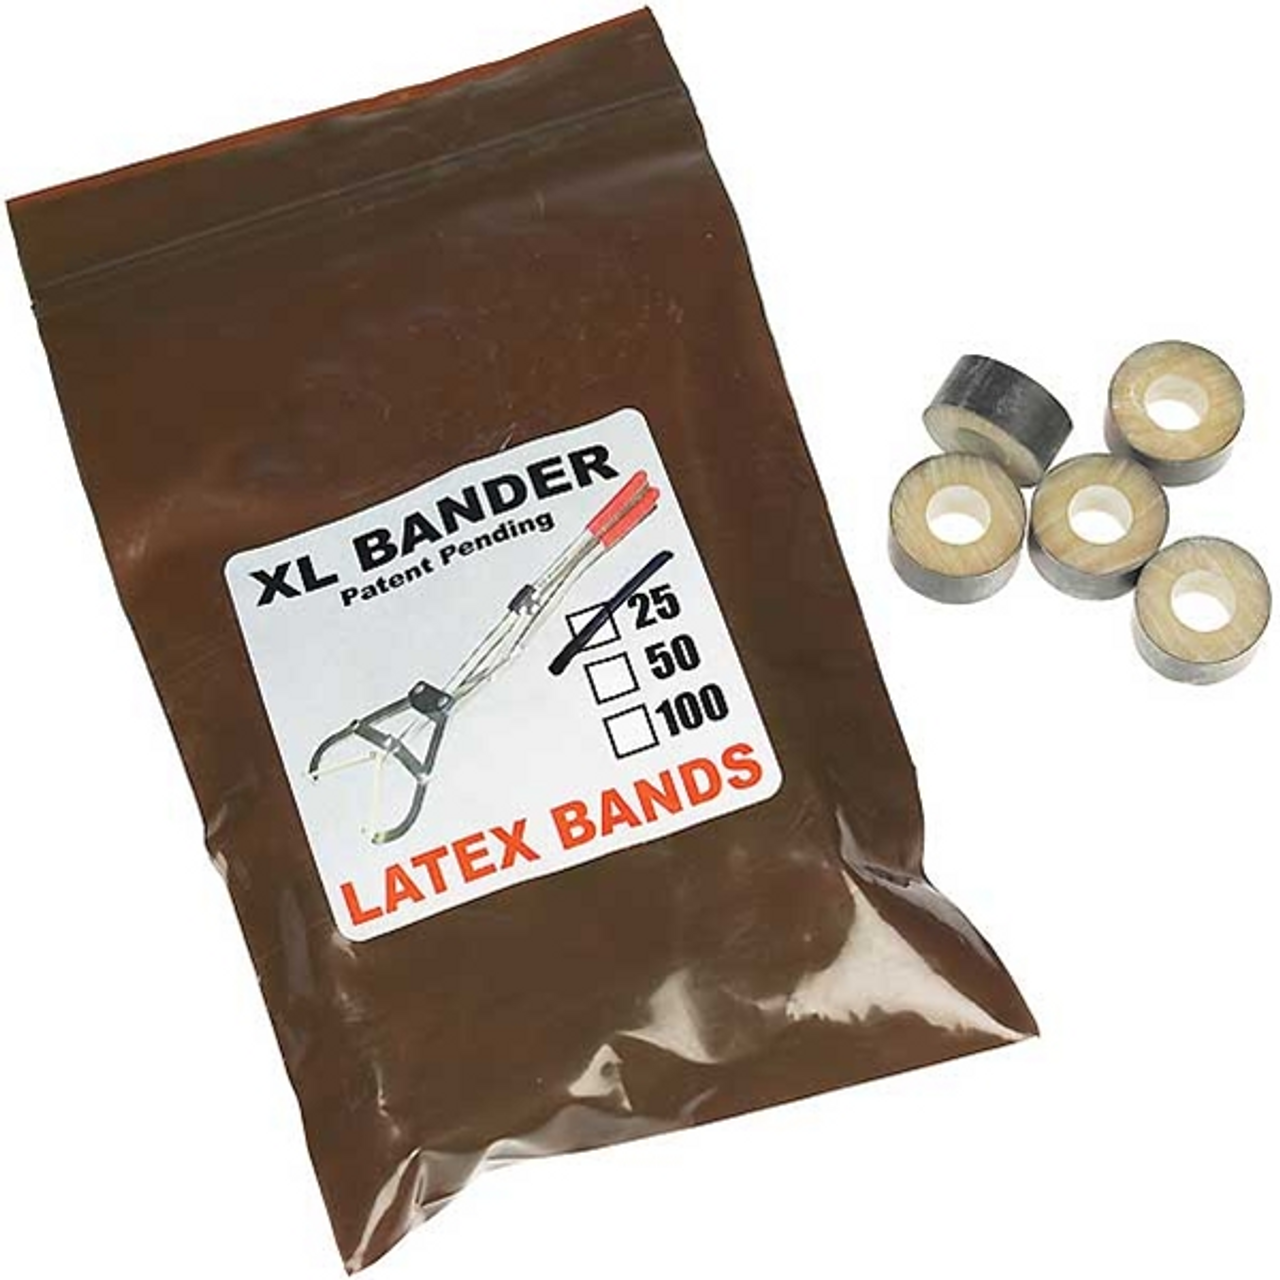 XL Bander Castration Bands